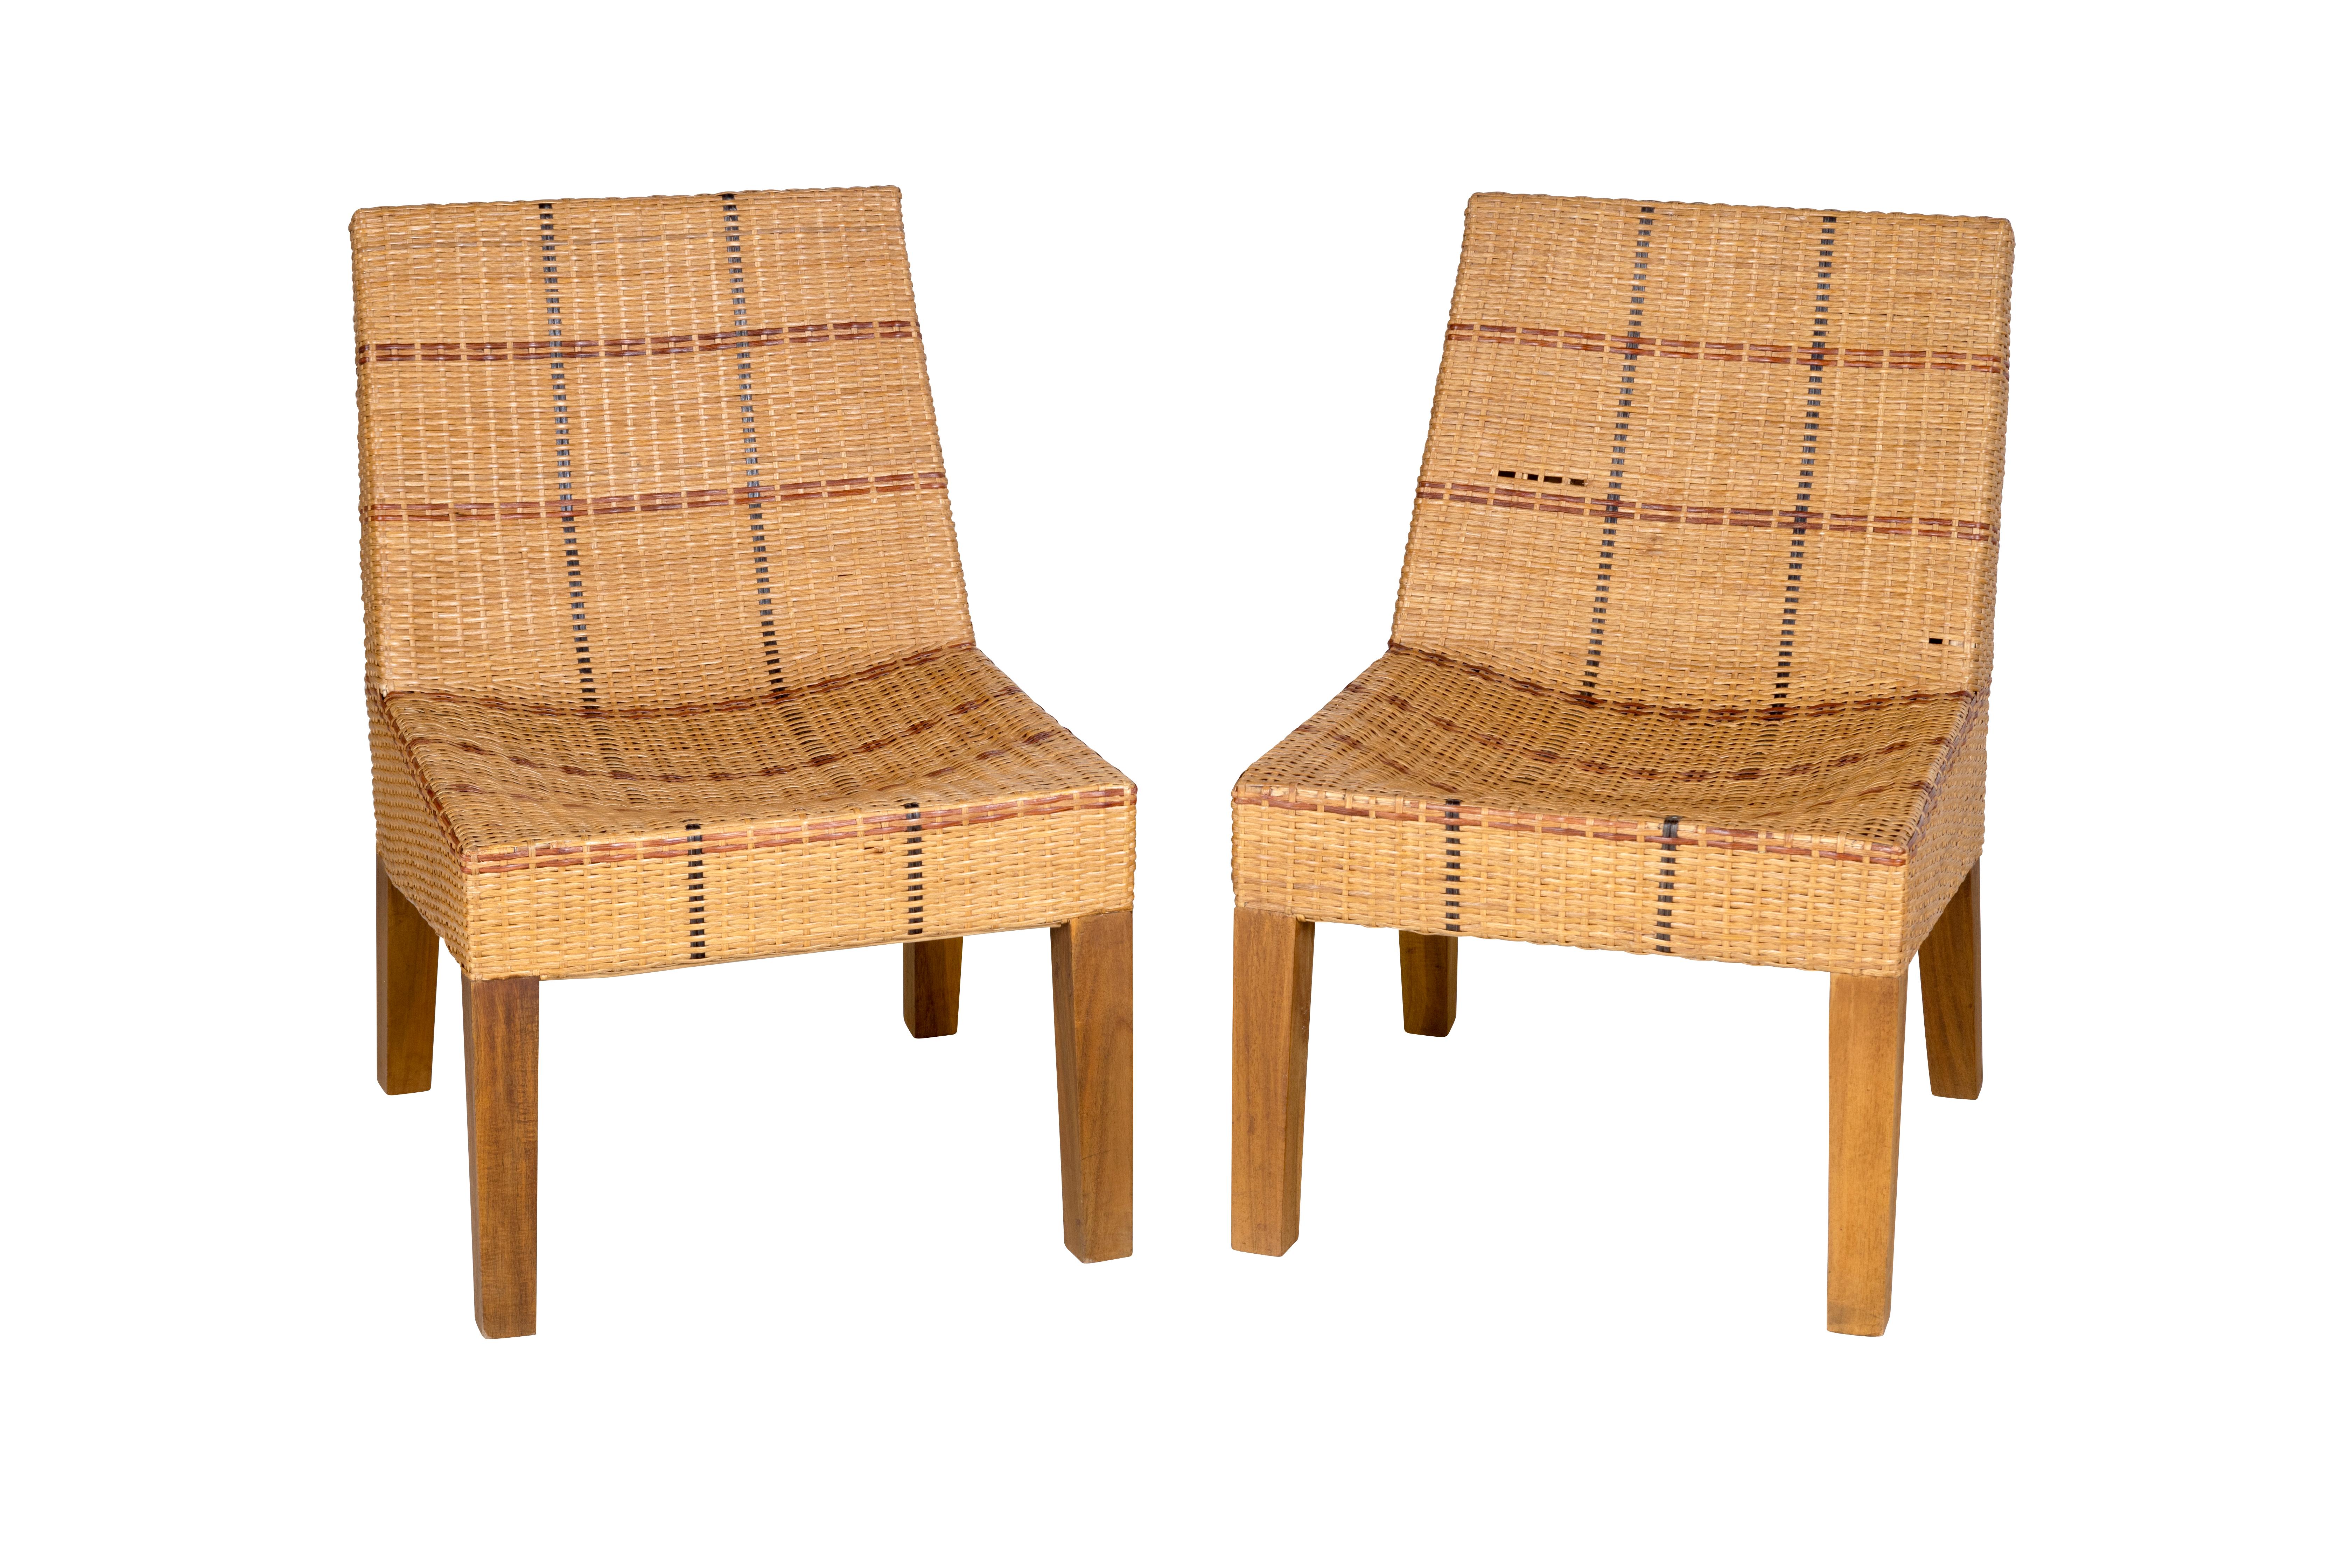 Paar Stühle und Ottomane aus den 1970er Jahren. Handgeflochtenes dreifarbiges Rattan. Einige Löcher und Gebrauchsspuren im Rattan.

Das Stück ist Teil unserer einzigartigen Collection'S, Le Monde. Exklusiv für uns. 

Die weltweit von Brendan